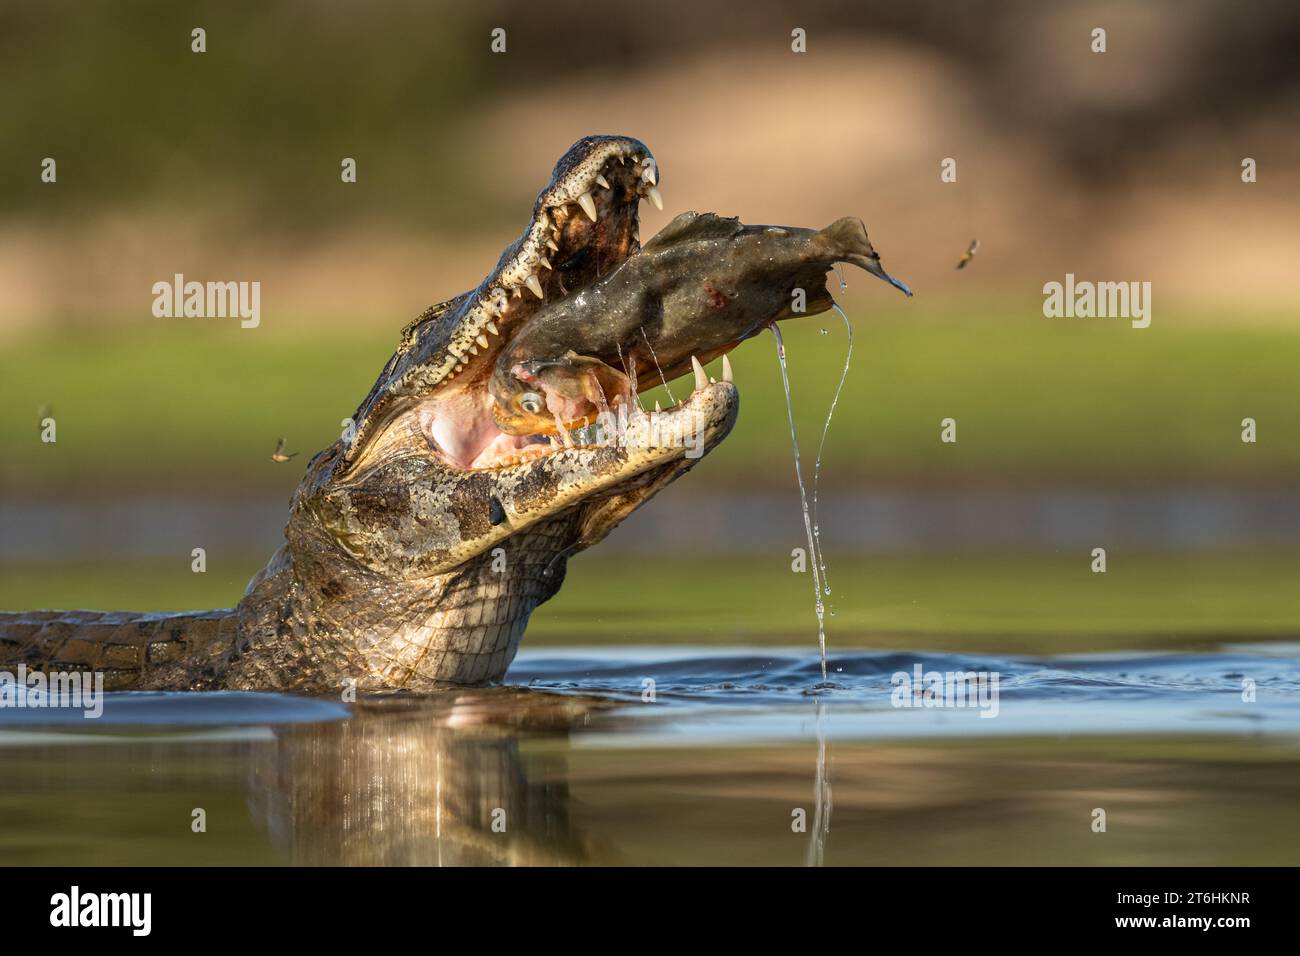 A Pantanal Caiman (Caiman yacare) eating a Piranha fish Stock Photo